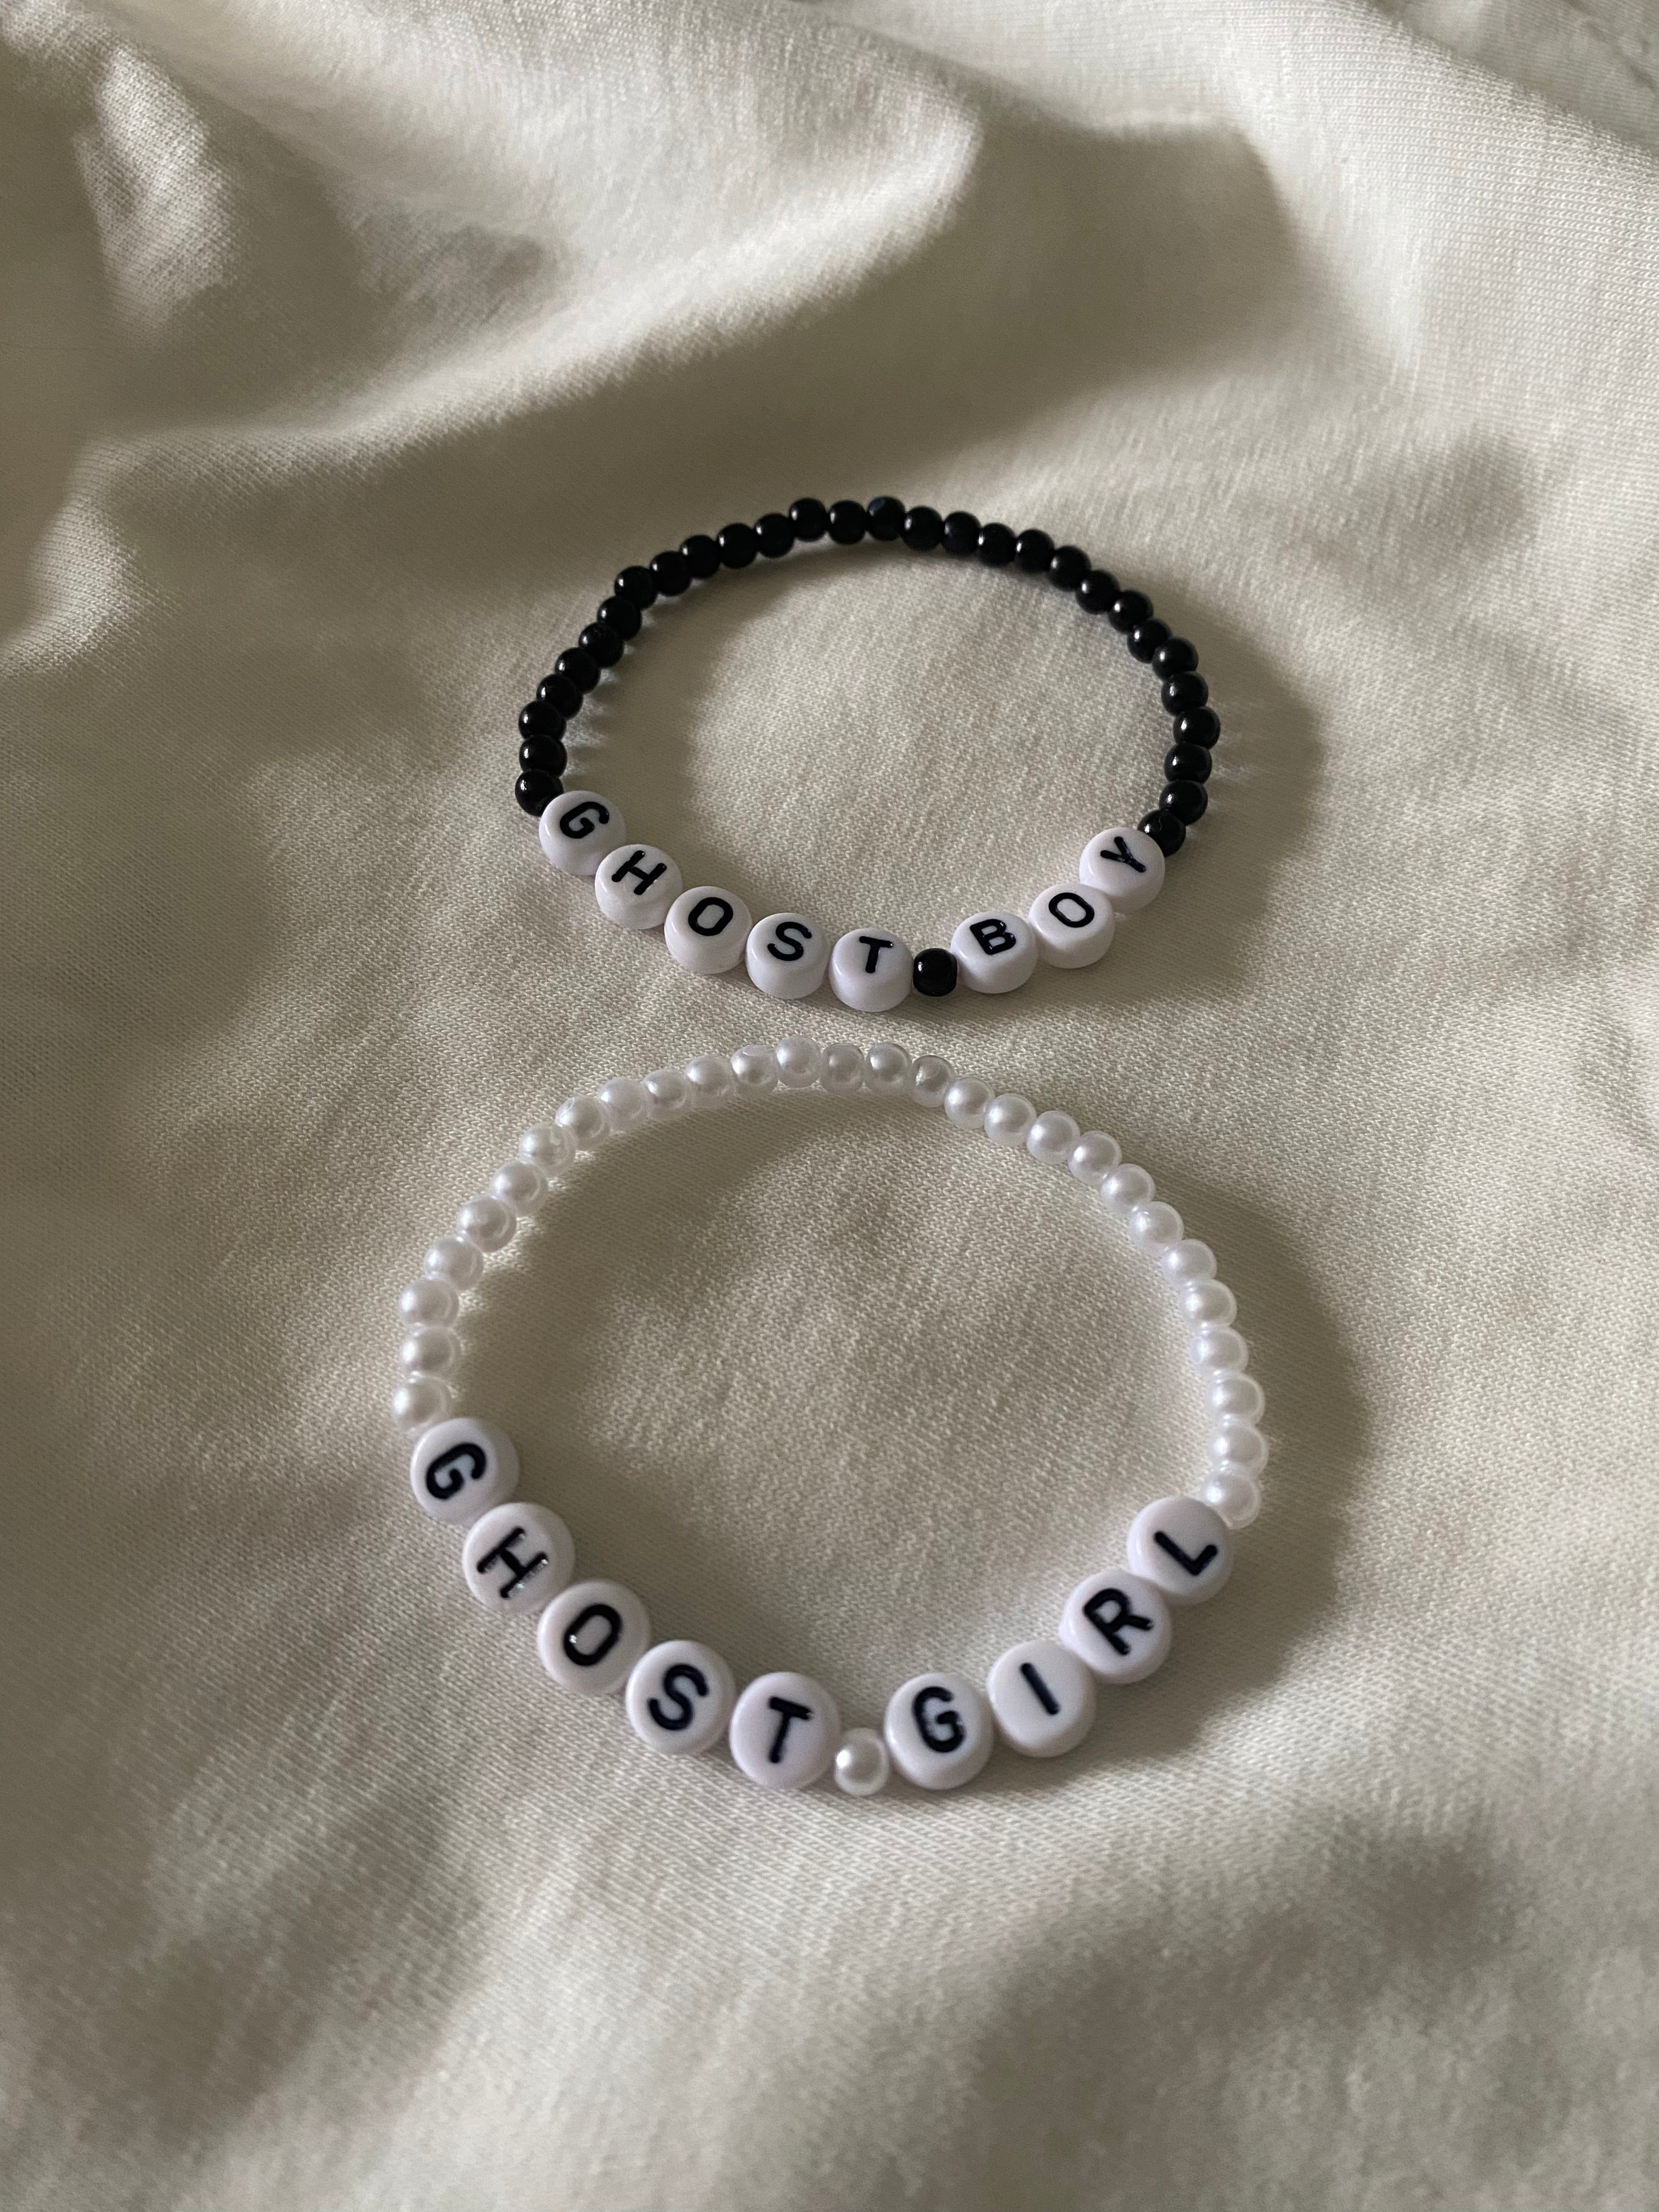 Buy ZIBUYU® Hand Bracelet for Men Stylish Stainless-Steel Bracelet for Men  Chain Bracelet for Boys Curb Chain Fashion Bracelet Gift for Boys & Men,  (8.2